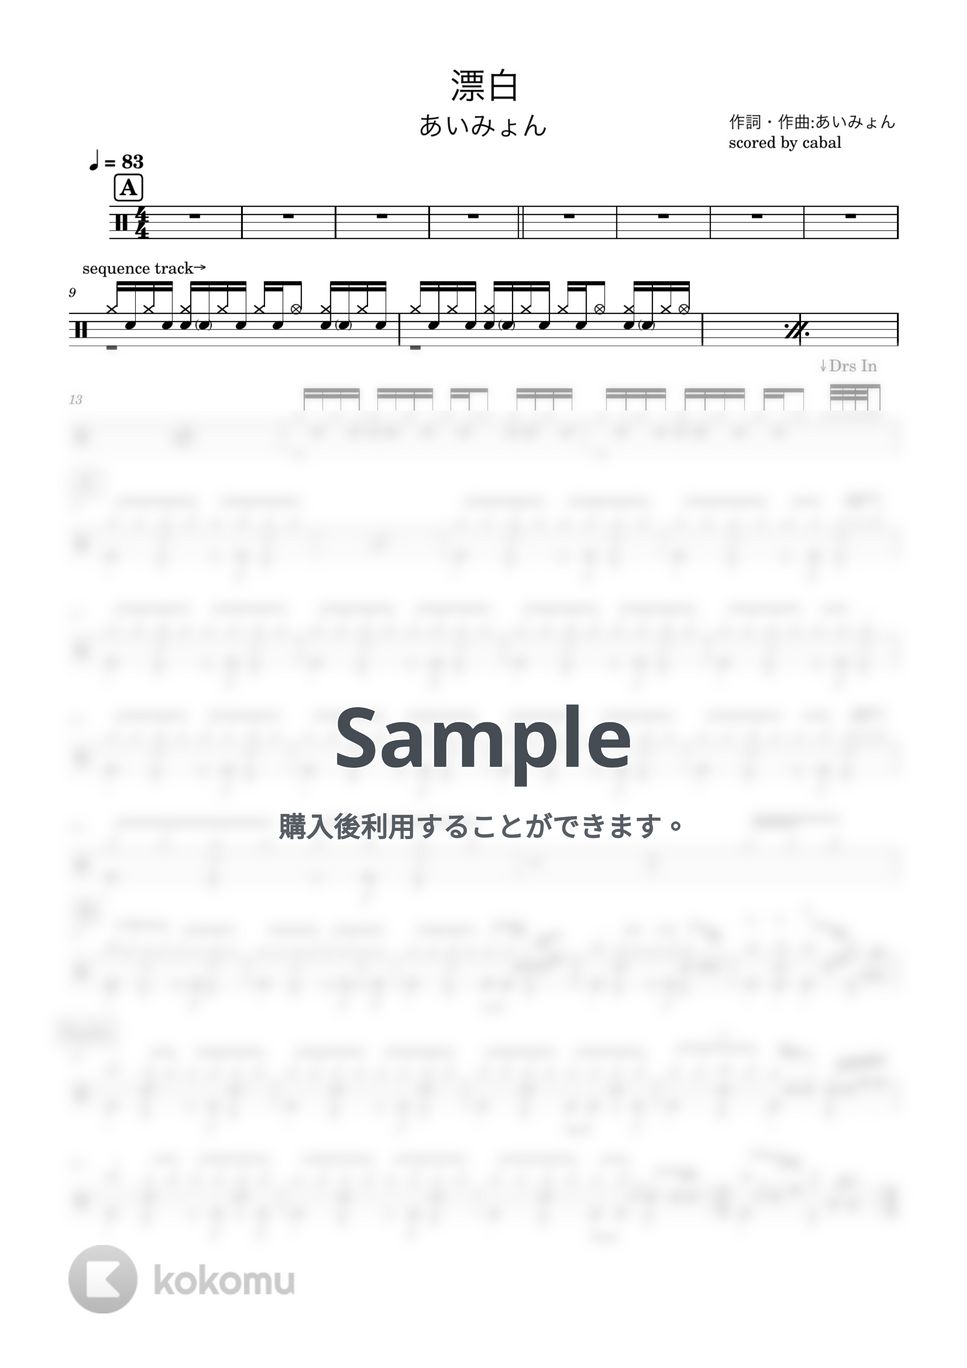 あいみょん - 漂白 (ドラム譜面) by cabal